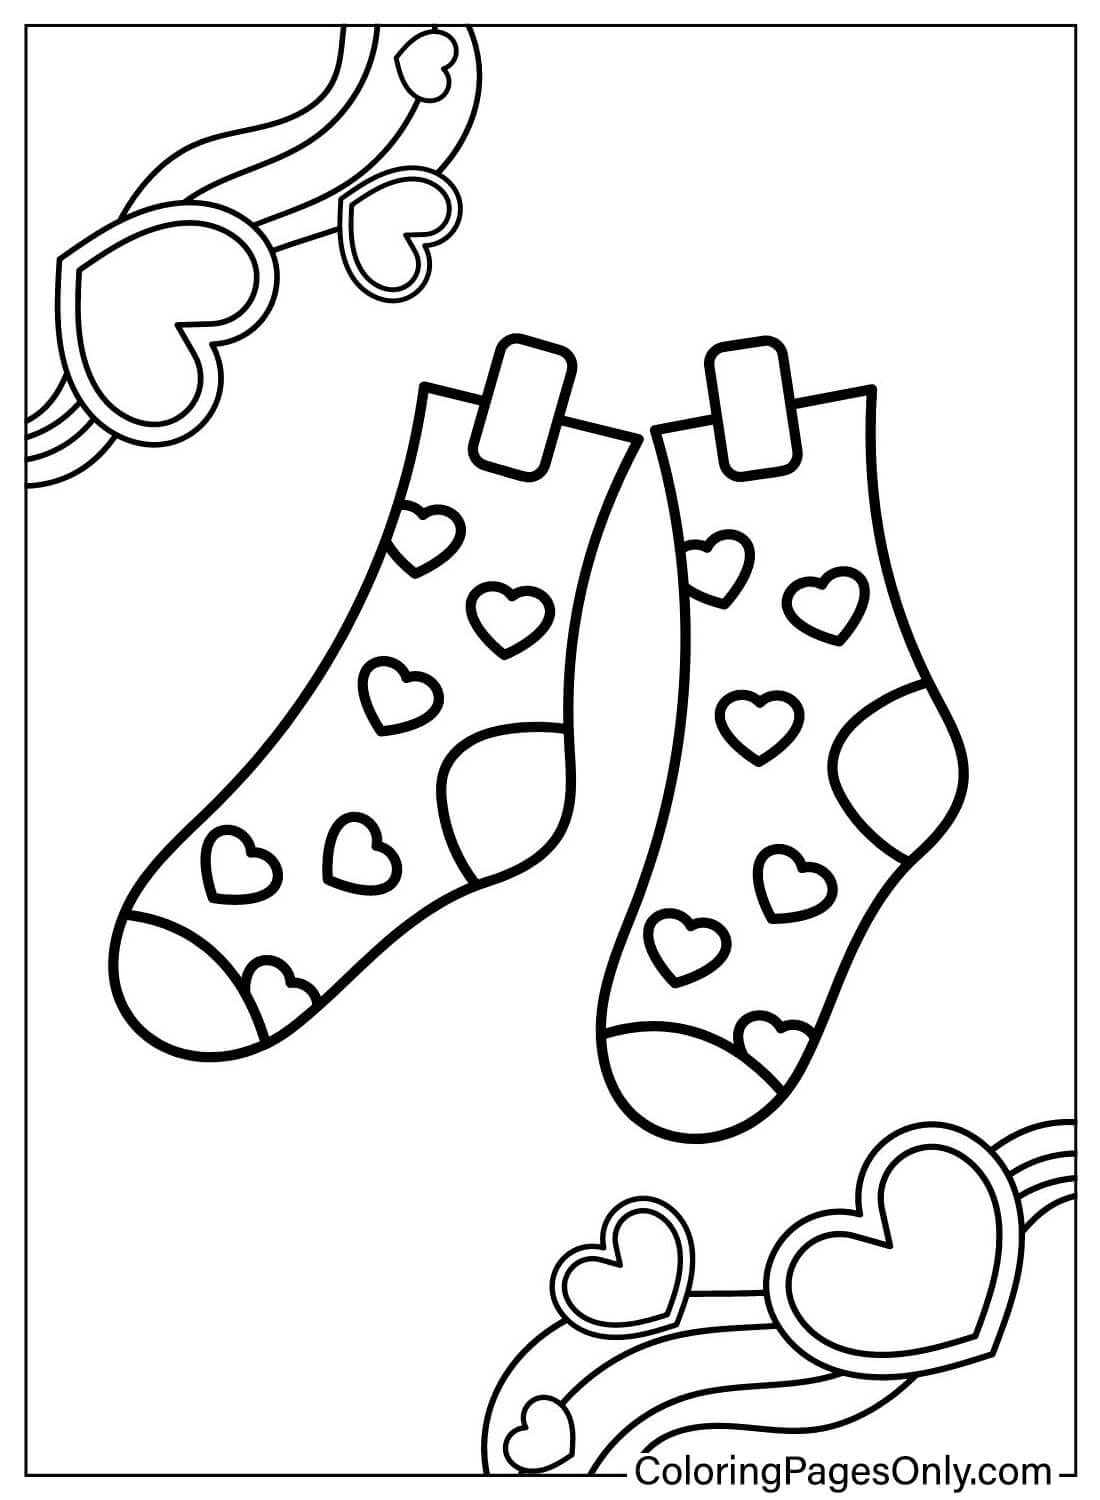 Téléchargez la page de coloriage de chaussettes à partir de chaussettes